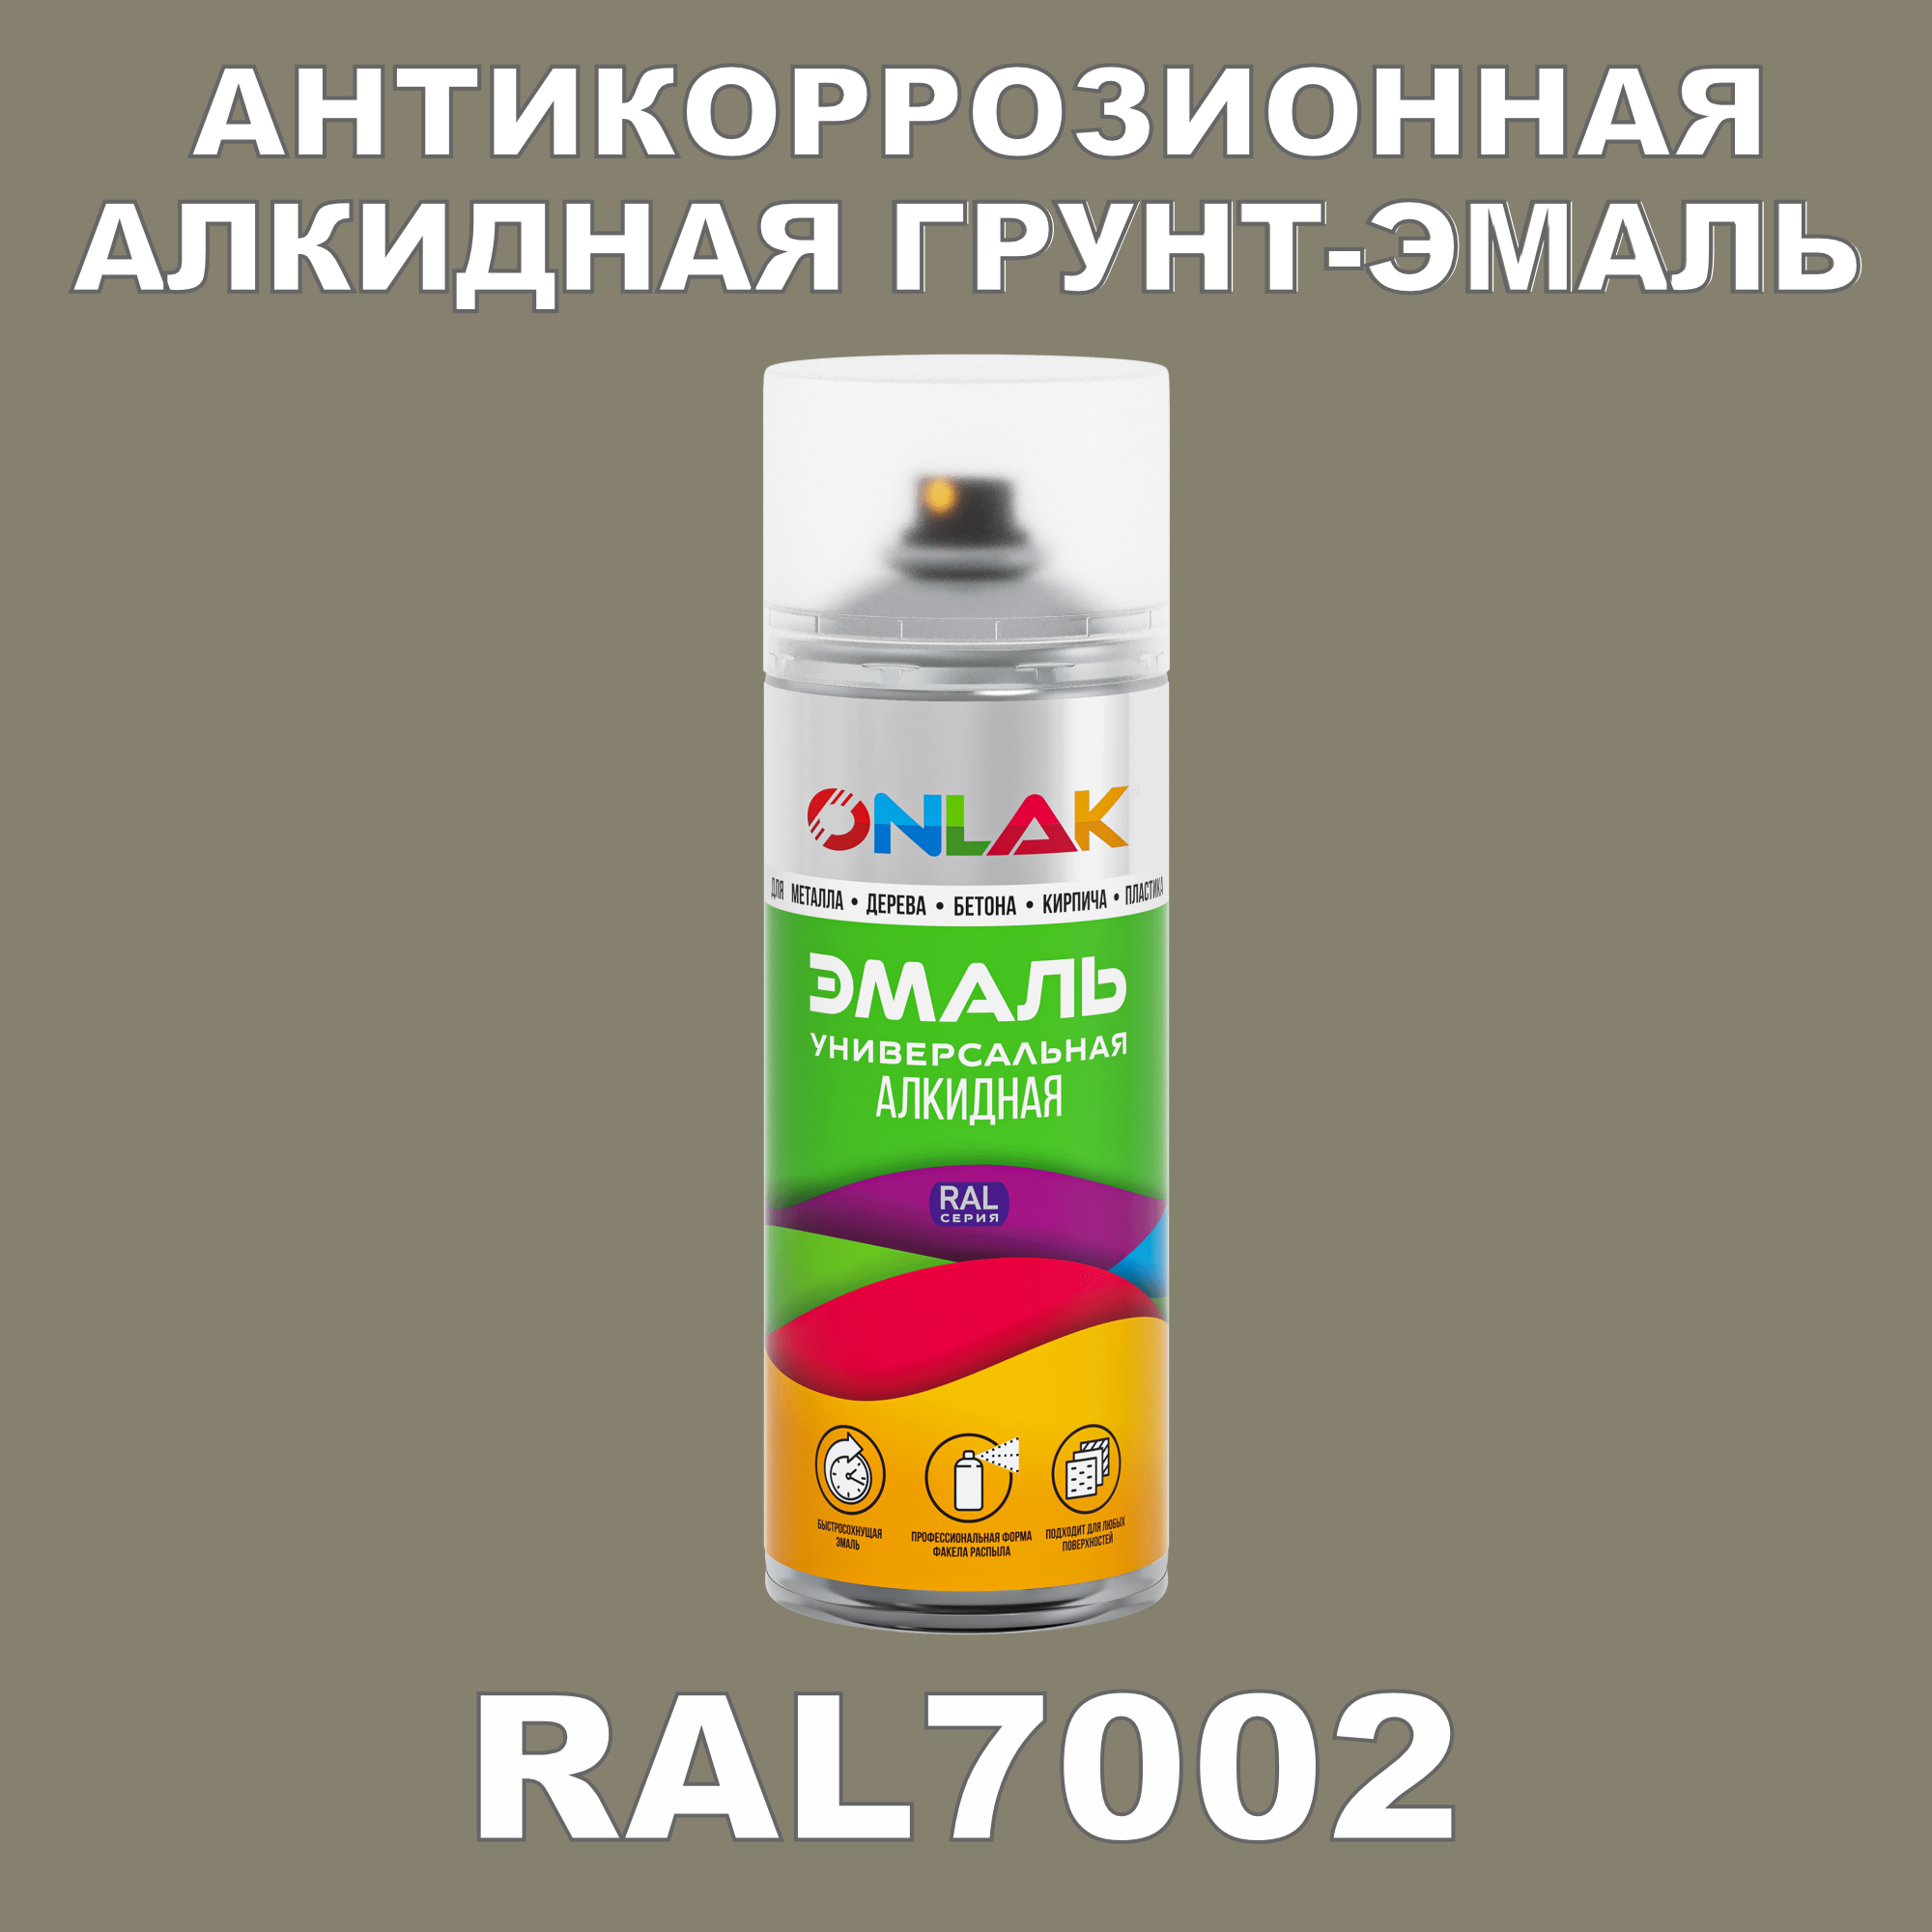 Антикоррозионная грунт-эмаль ONLAK RAL7002 полуматовая для металла и защиты от ржавчины